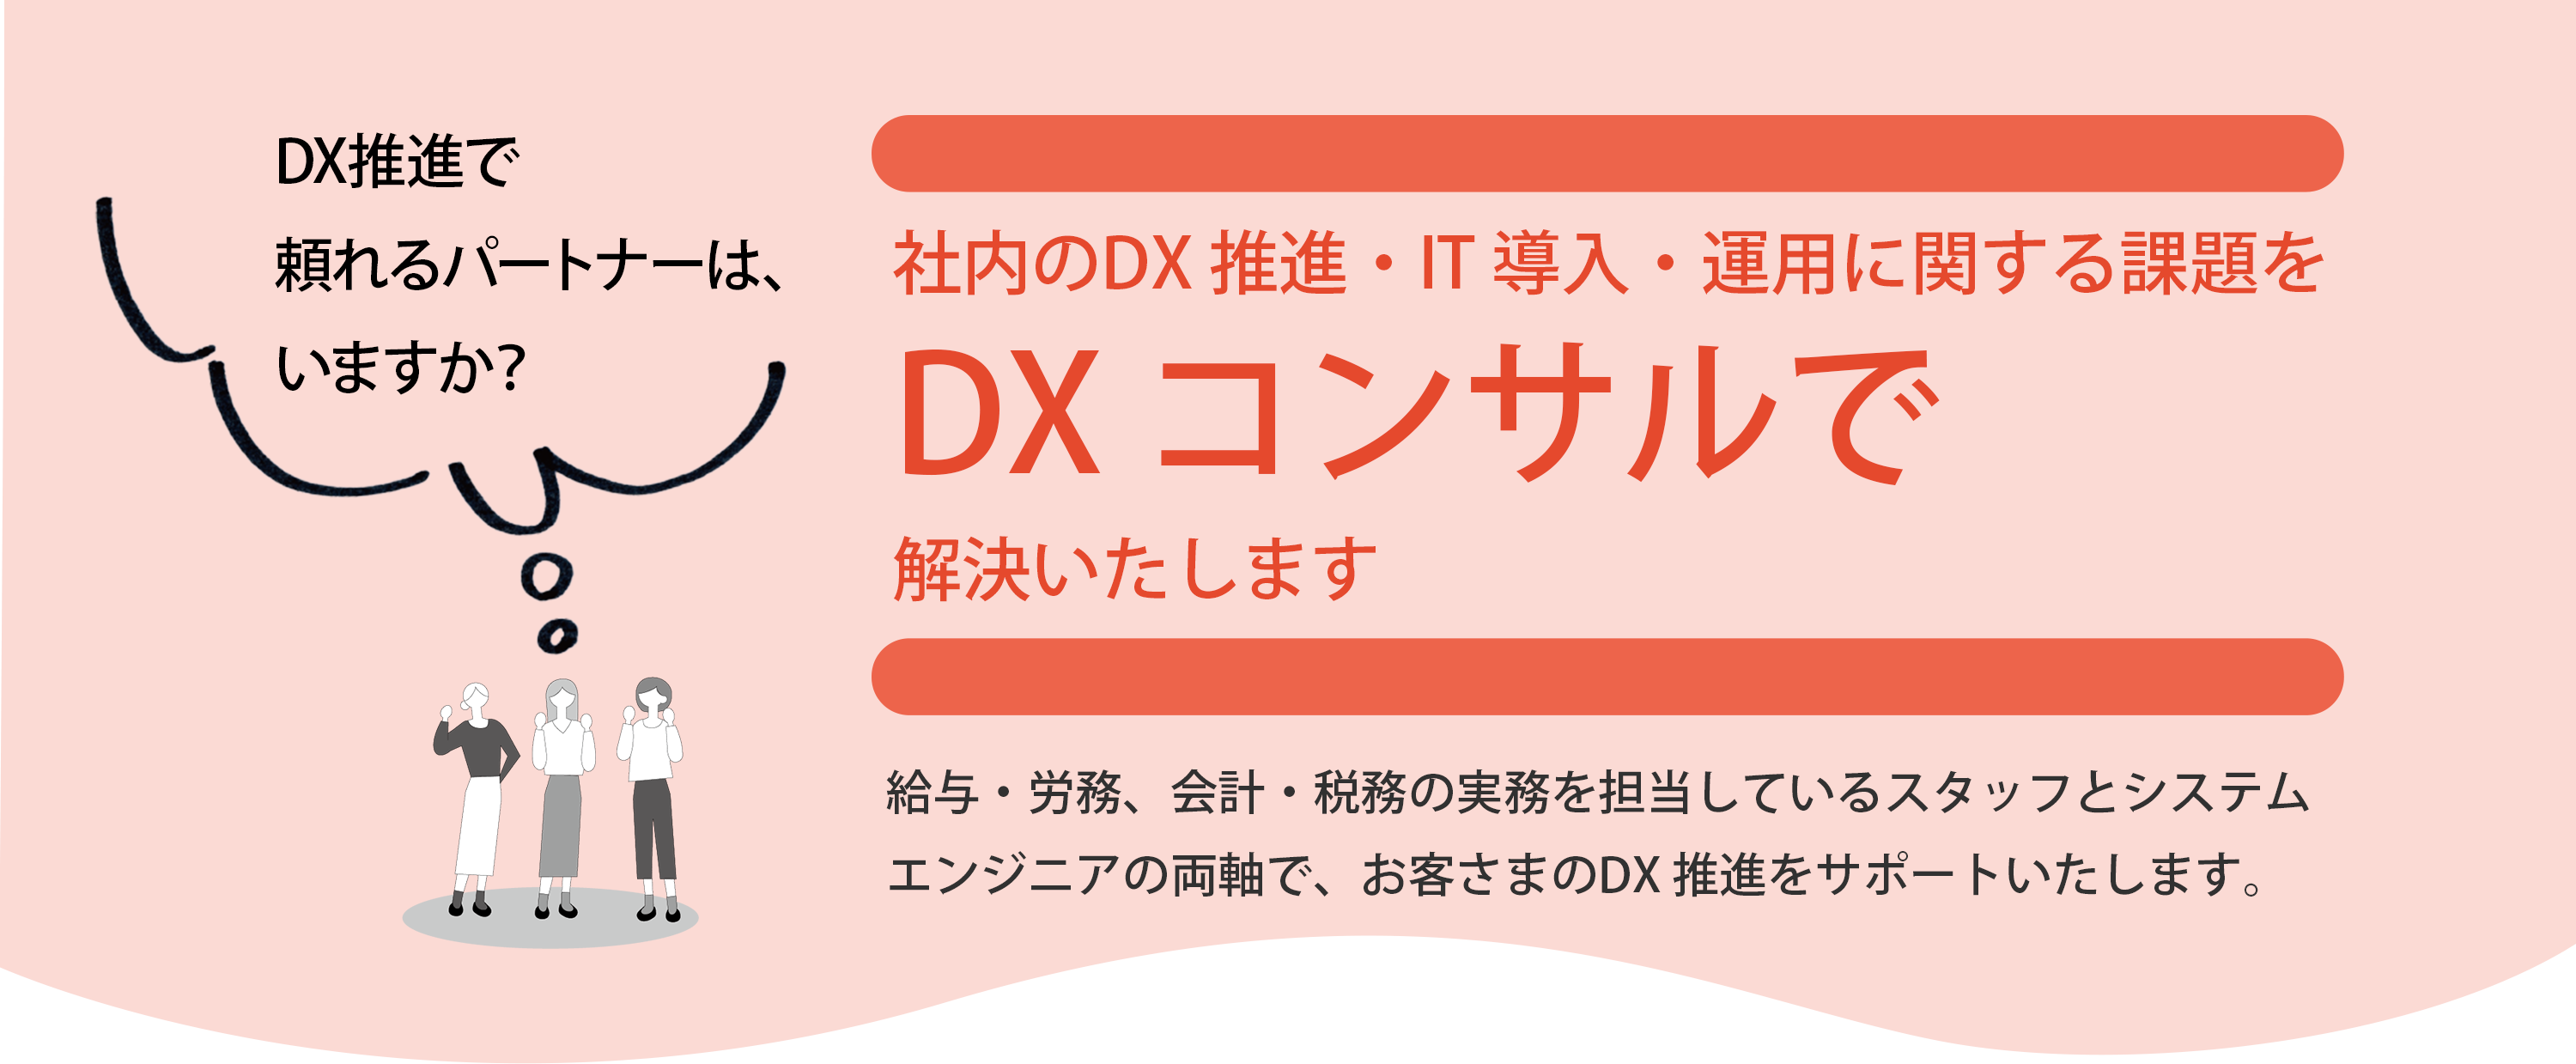 社内のDX 推進・IT 導入・運用に関する課題をDXコンサルで解決いたします